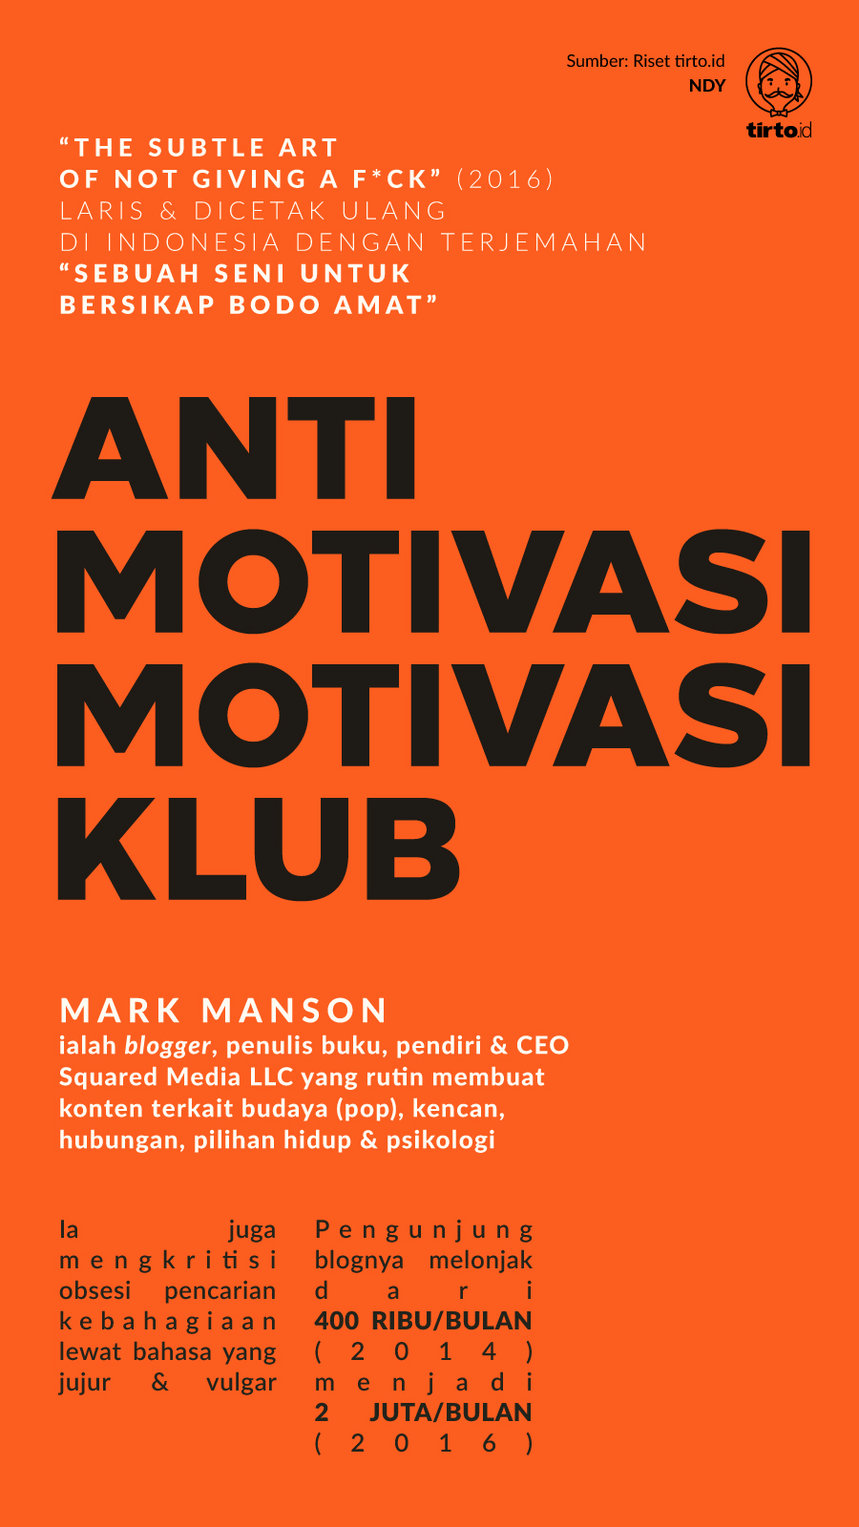 Infografik Anti motivasi motivasi club